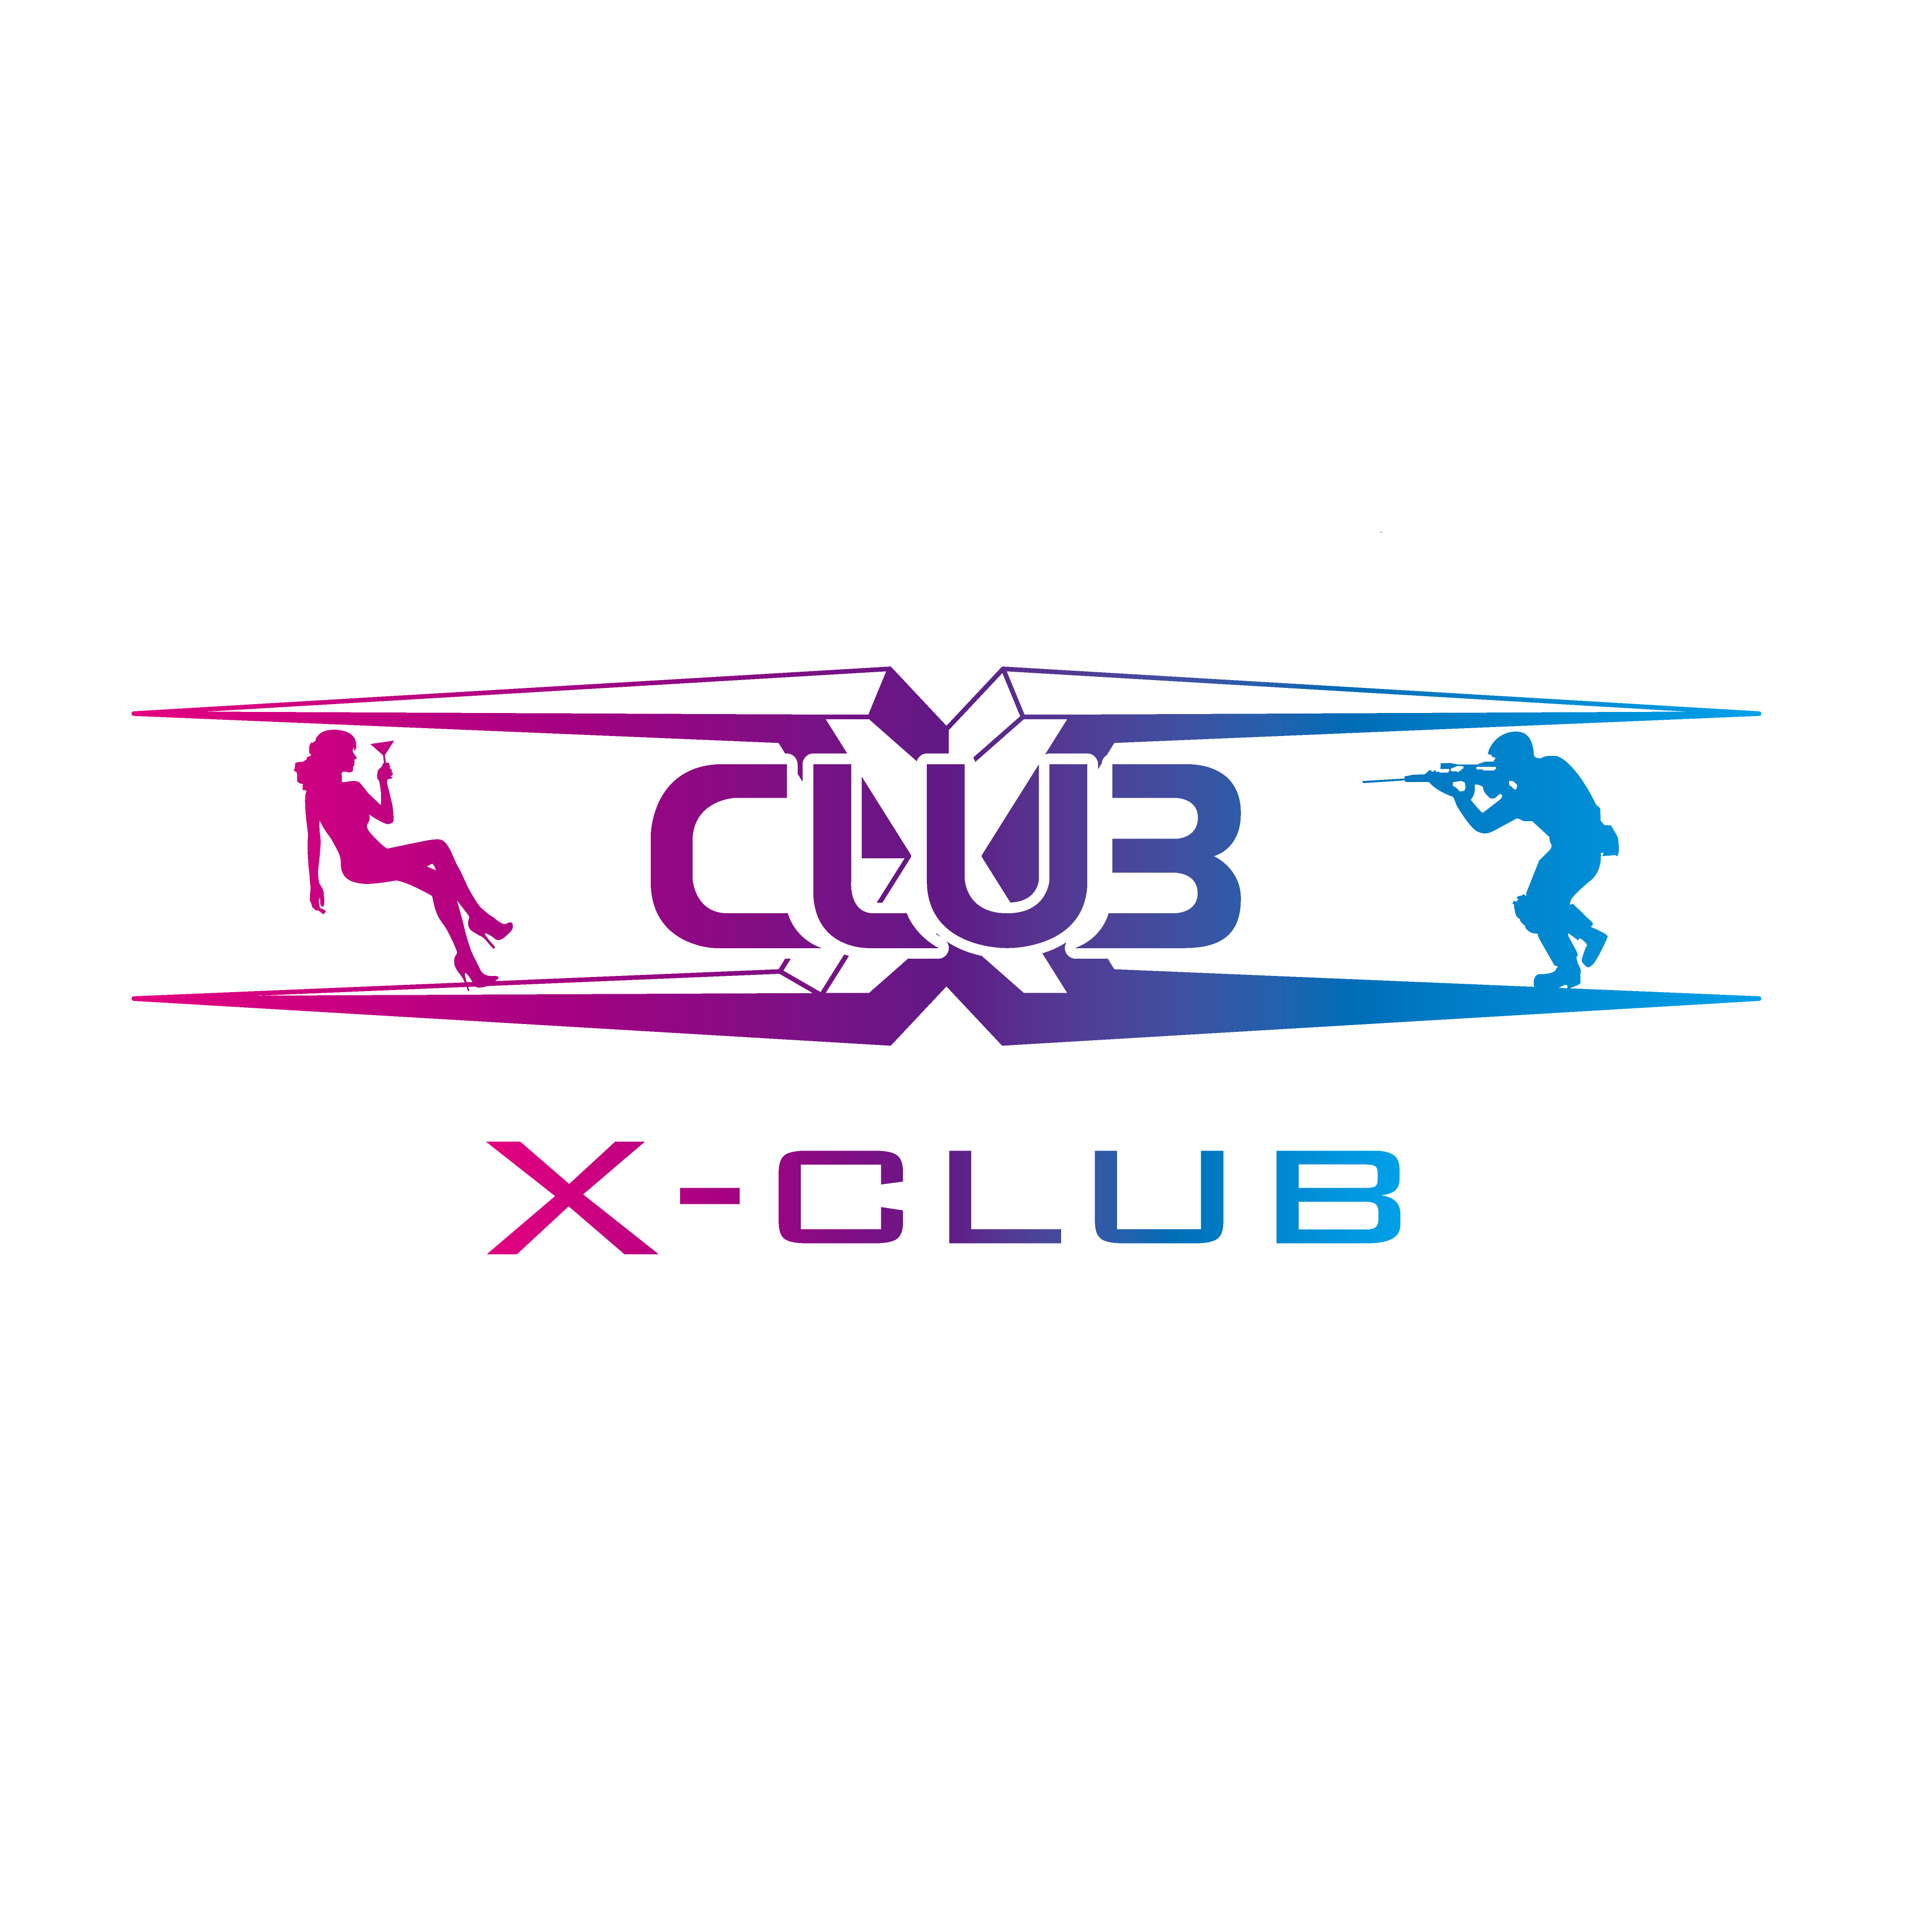 x-club鐳戰主題酒吧